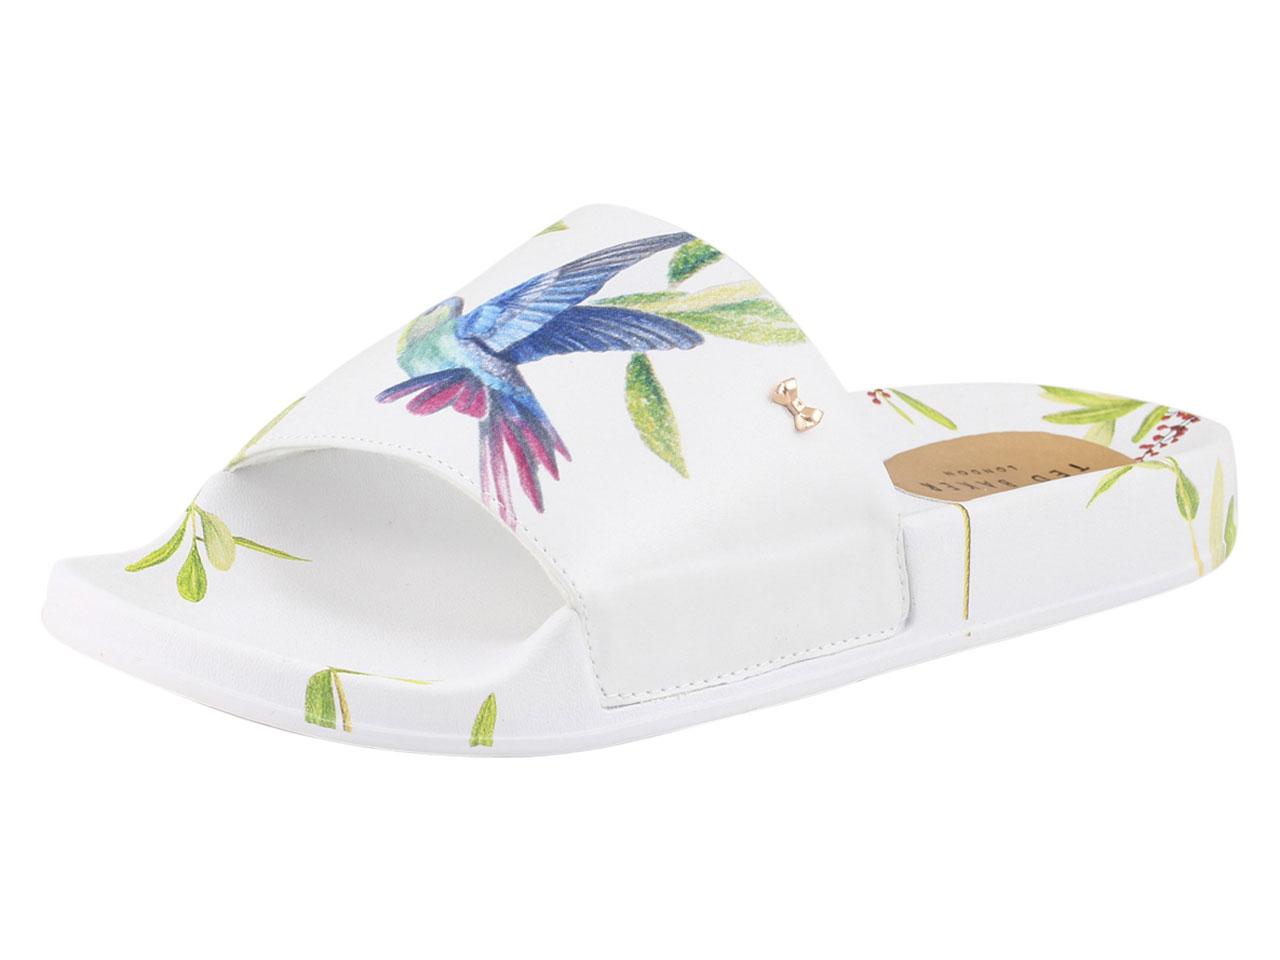 Ted Baker Women's Aveline Slides Sandals Shoes - White - 8 B(M) US